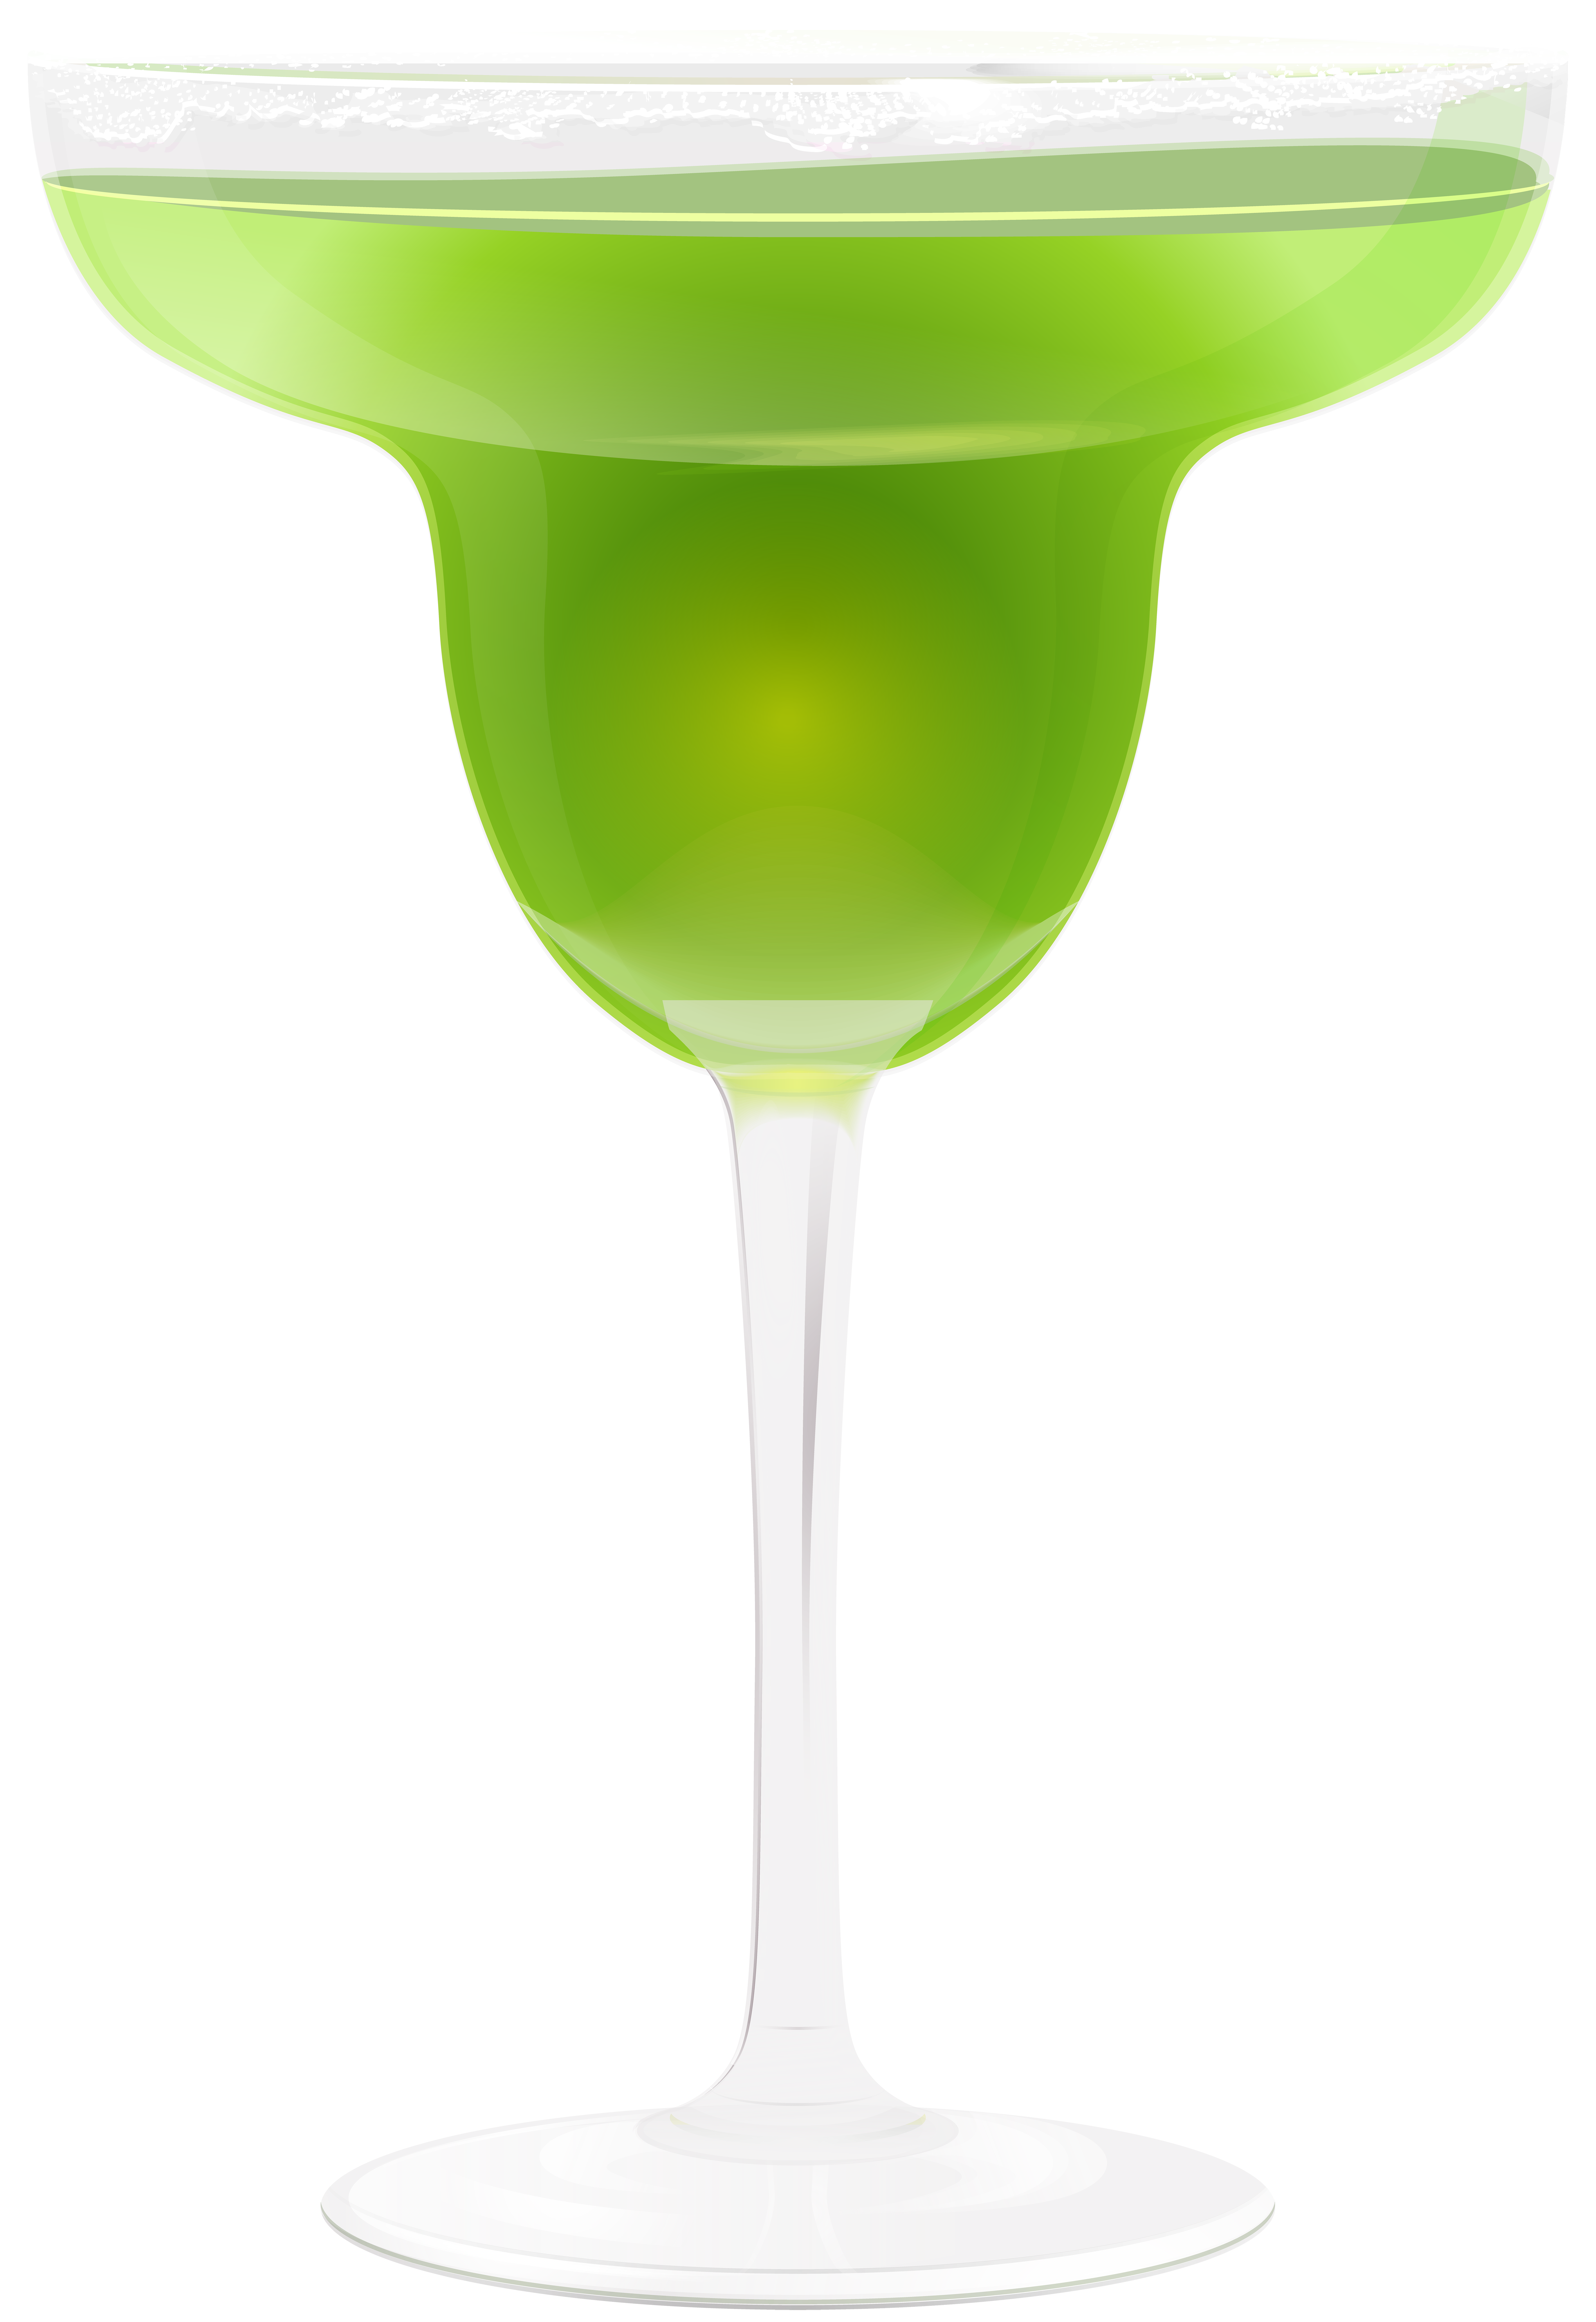 Cocktails clipart daiquiri. Martini margarita gimlet appletini